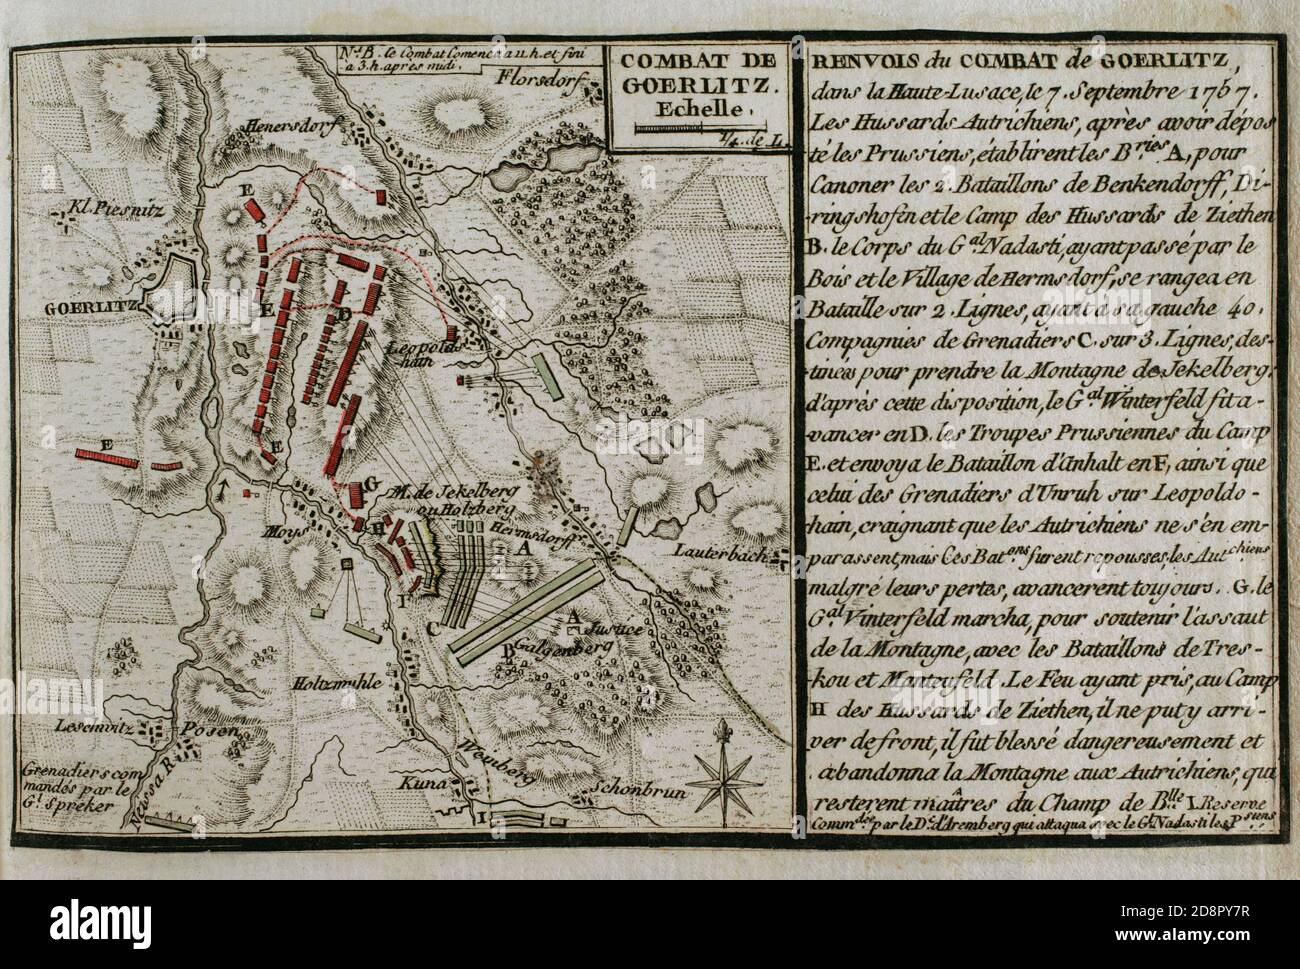 Guerra de los Siete Años. Combate de Goerlitz (7 de septiembre de 1757). Alta Lusacia. Enfrentamiento armado que tuvo lugar durante la Batalla de Moys, en el marco de la Tercera Guerra de Silesia. Tropas prusianas, comandadas por Hans Karl Von Winterfeldt, fueron derrotadas por un ejército austríaco dirigido por el mariscal Daun con el doble de efectivos. Grabado publicado en 1765 por el cartógrafo Jean de Beaurain (1696-1771) como ilustración de su Gran mapa de Alemania, con los eventos que tuvieron lugar durante la Guerra de los Siete Años. Guerra de 1755 a 1763. Edición Francesa,1765. Bibio Stock Photo